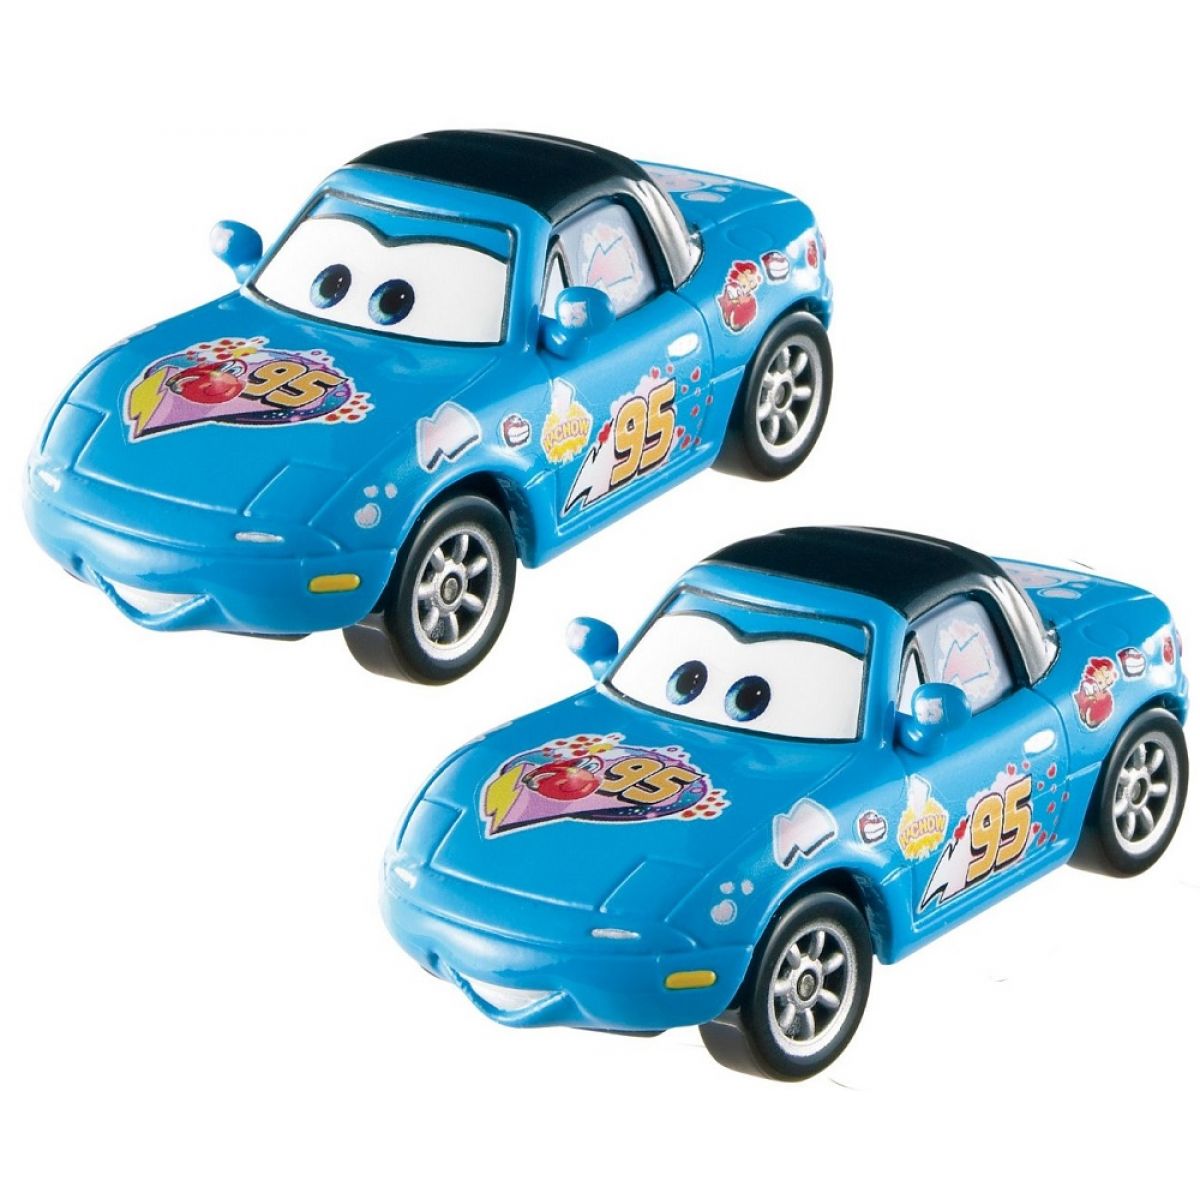 Mattel Cars 2 Autíčka 2ks - Dinoco Mia a Dinoco Tia